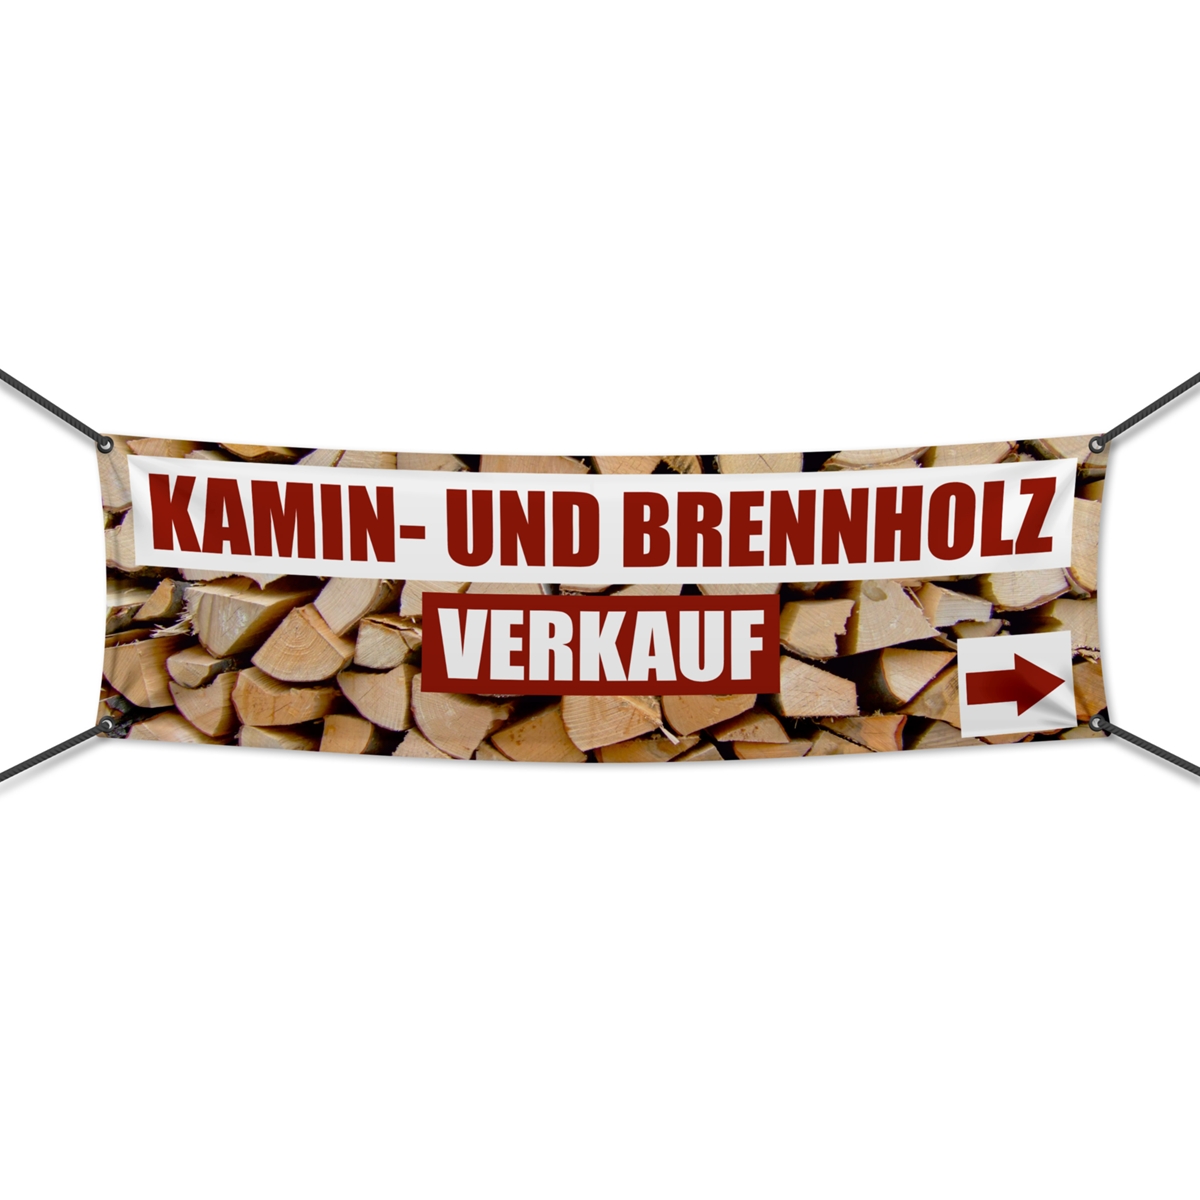 Kamin- und Brennholzverkauf Werbebanner | Wunschgröße (1608)